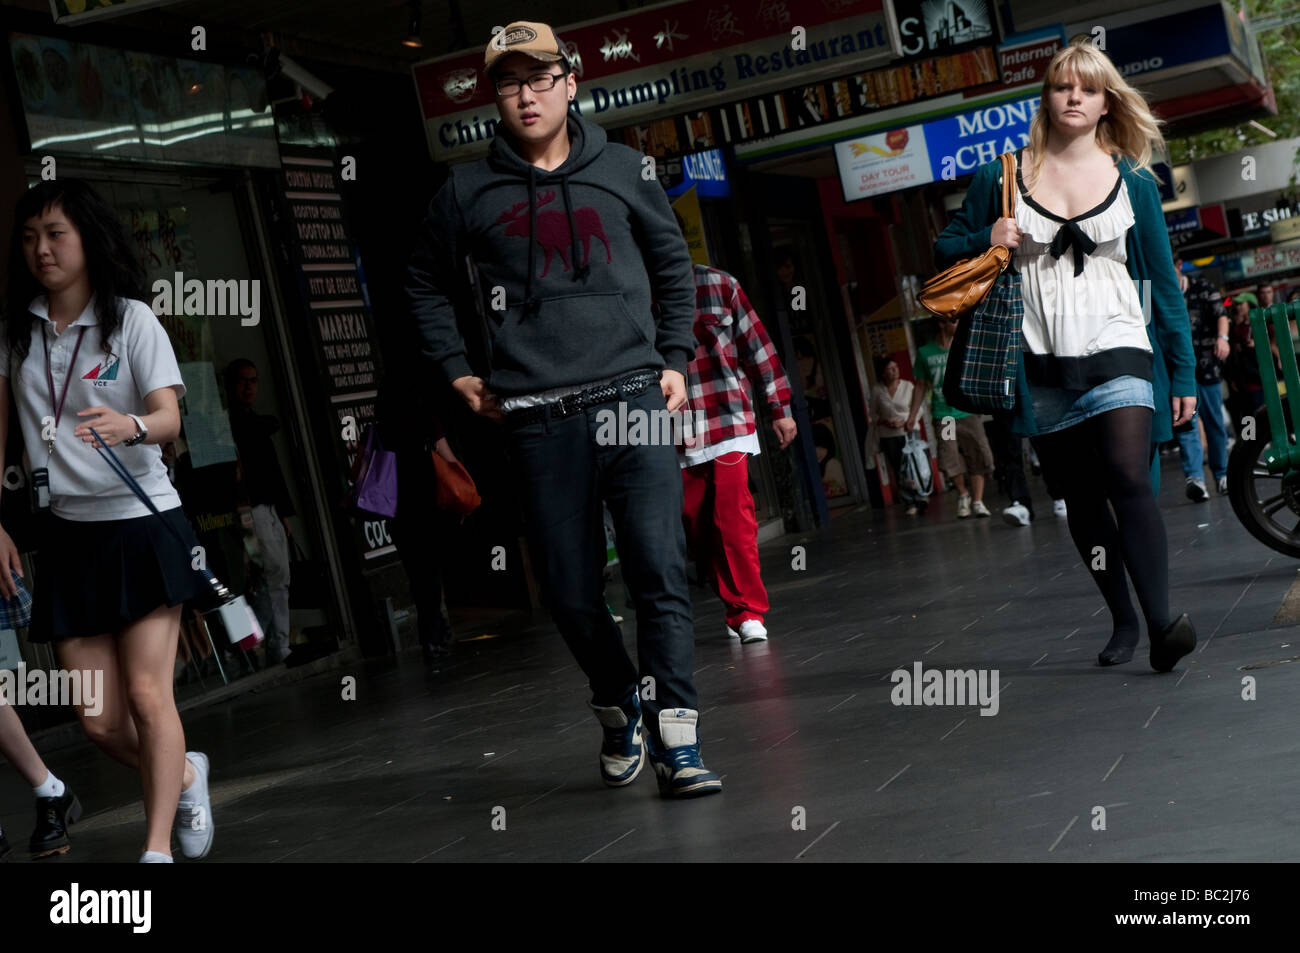 People walking on Swanston Street, Melbourne, Victoria, Australia Stock Photo